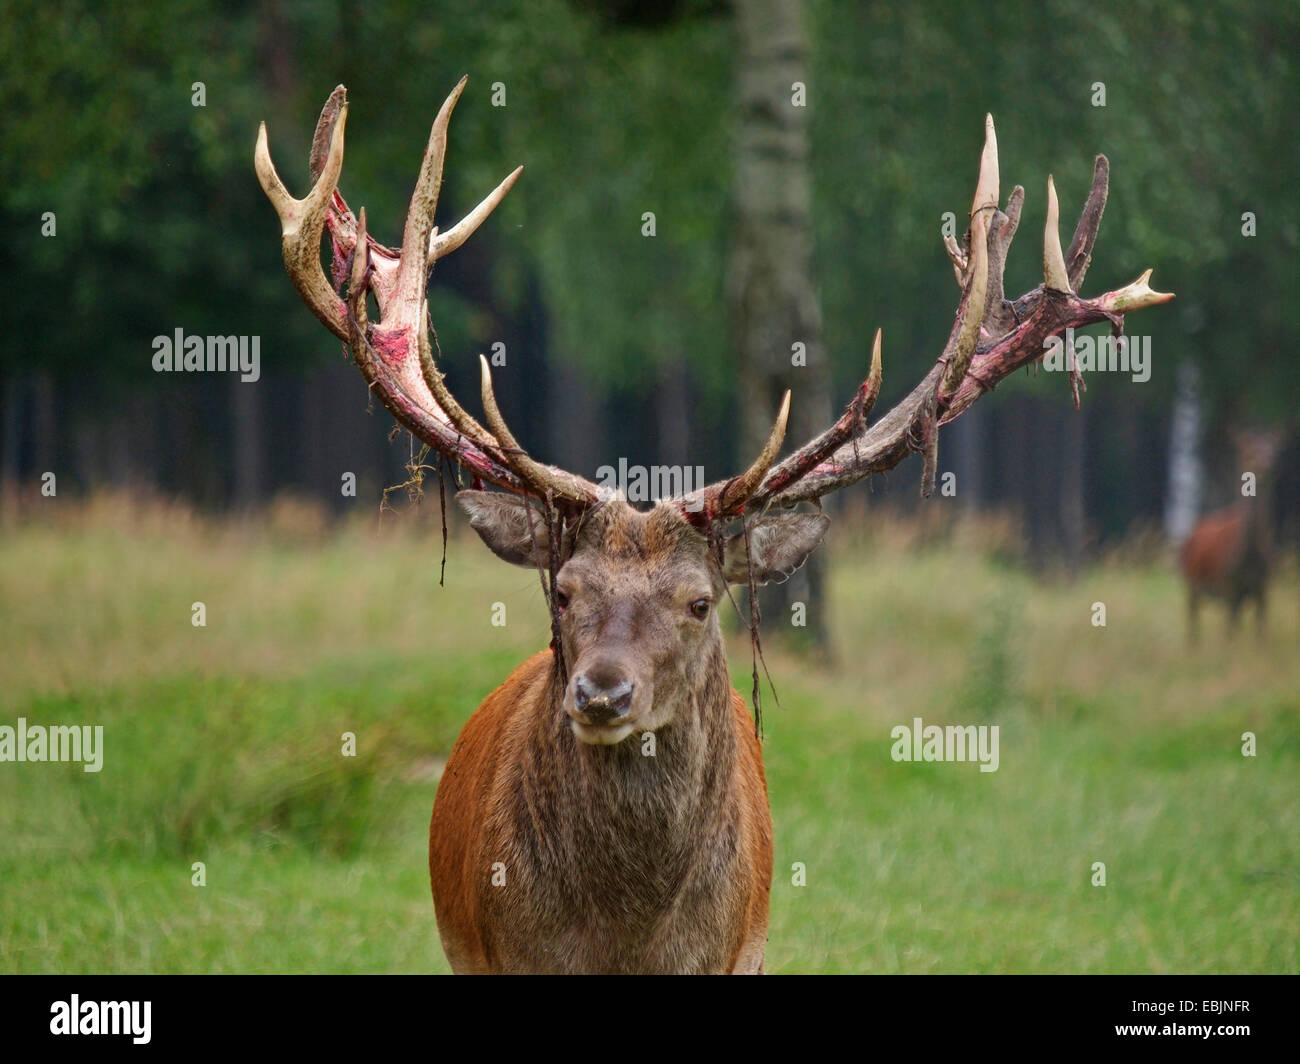 red deer (Cervus elaphus), portrait of a stag, Germany Stock Photo